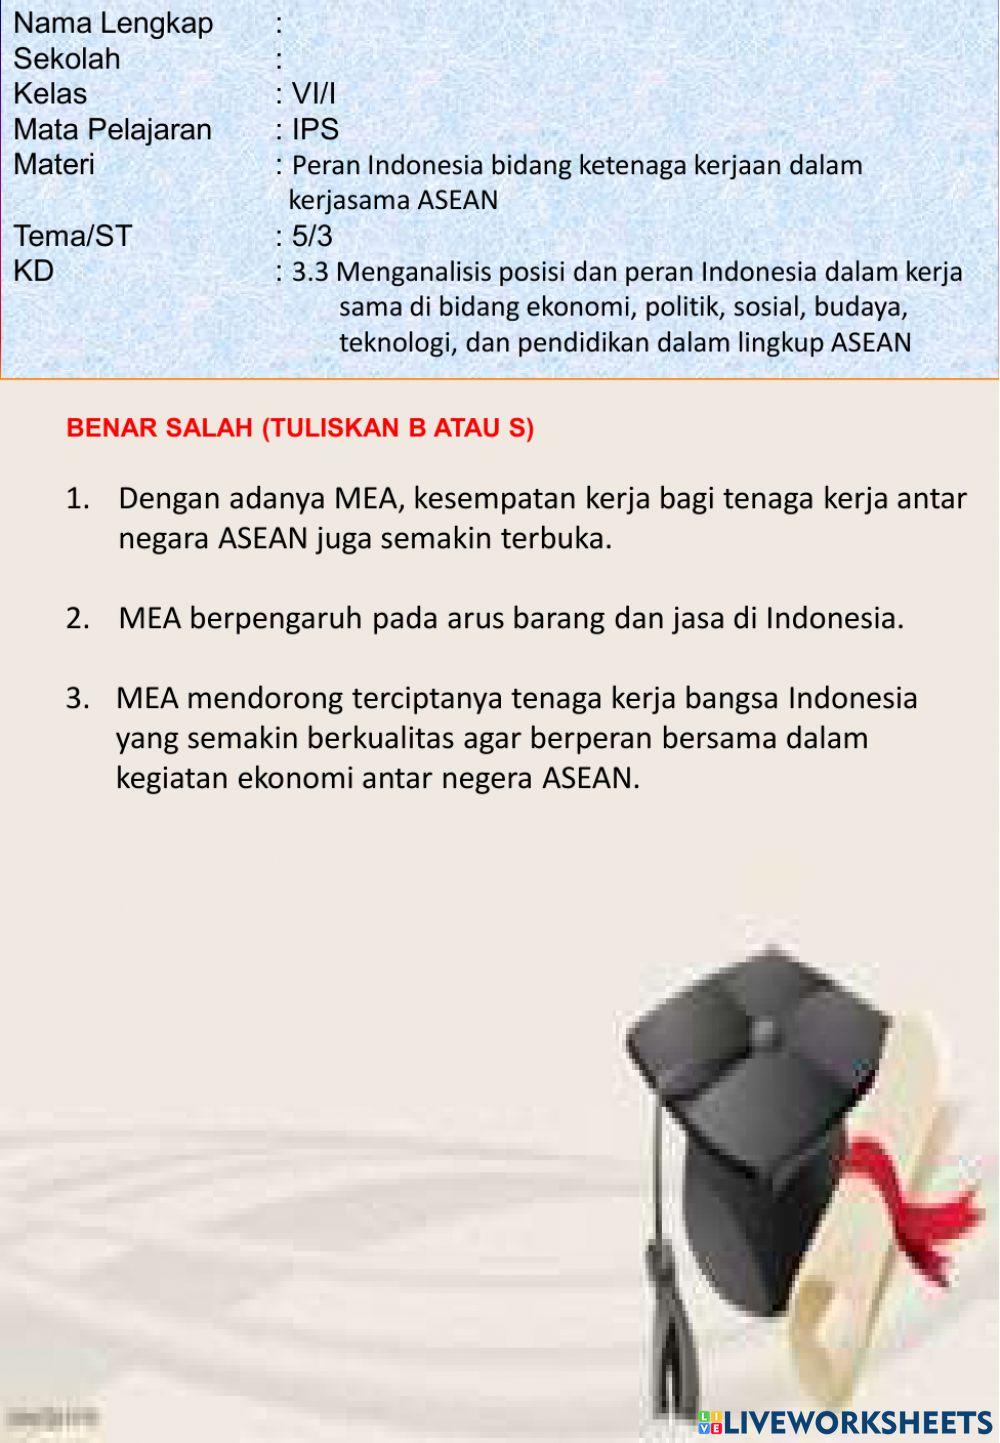 Peran Indonesia bidang ketenaga kerjaan dalam kerjasama ASEAN